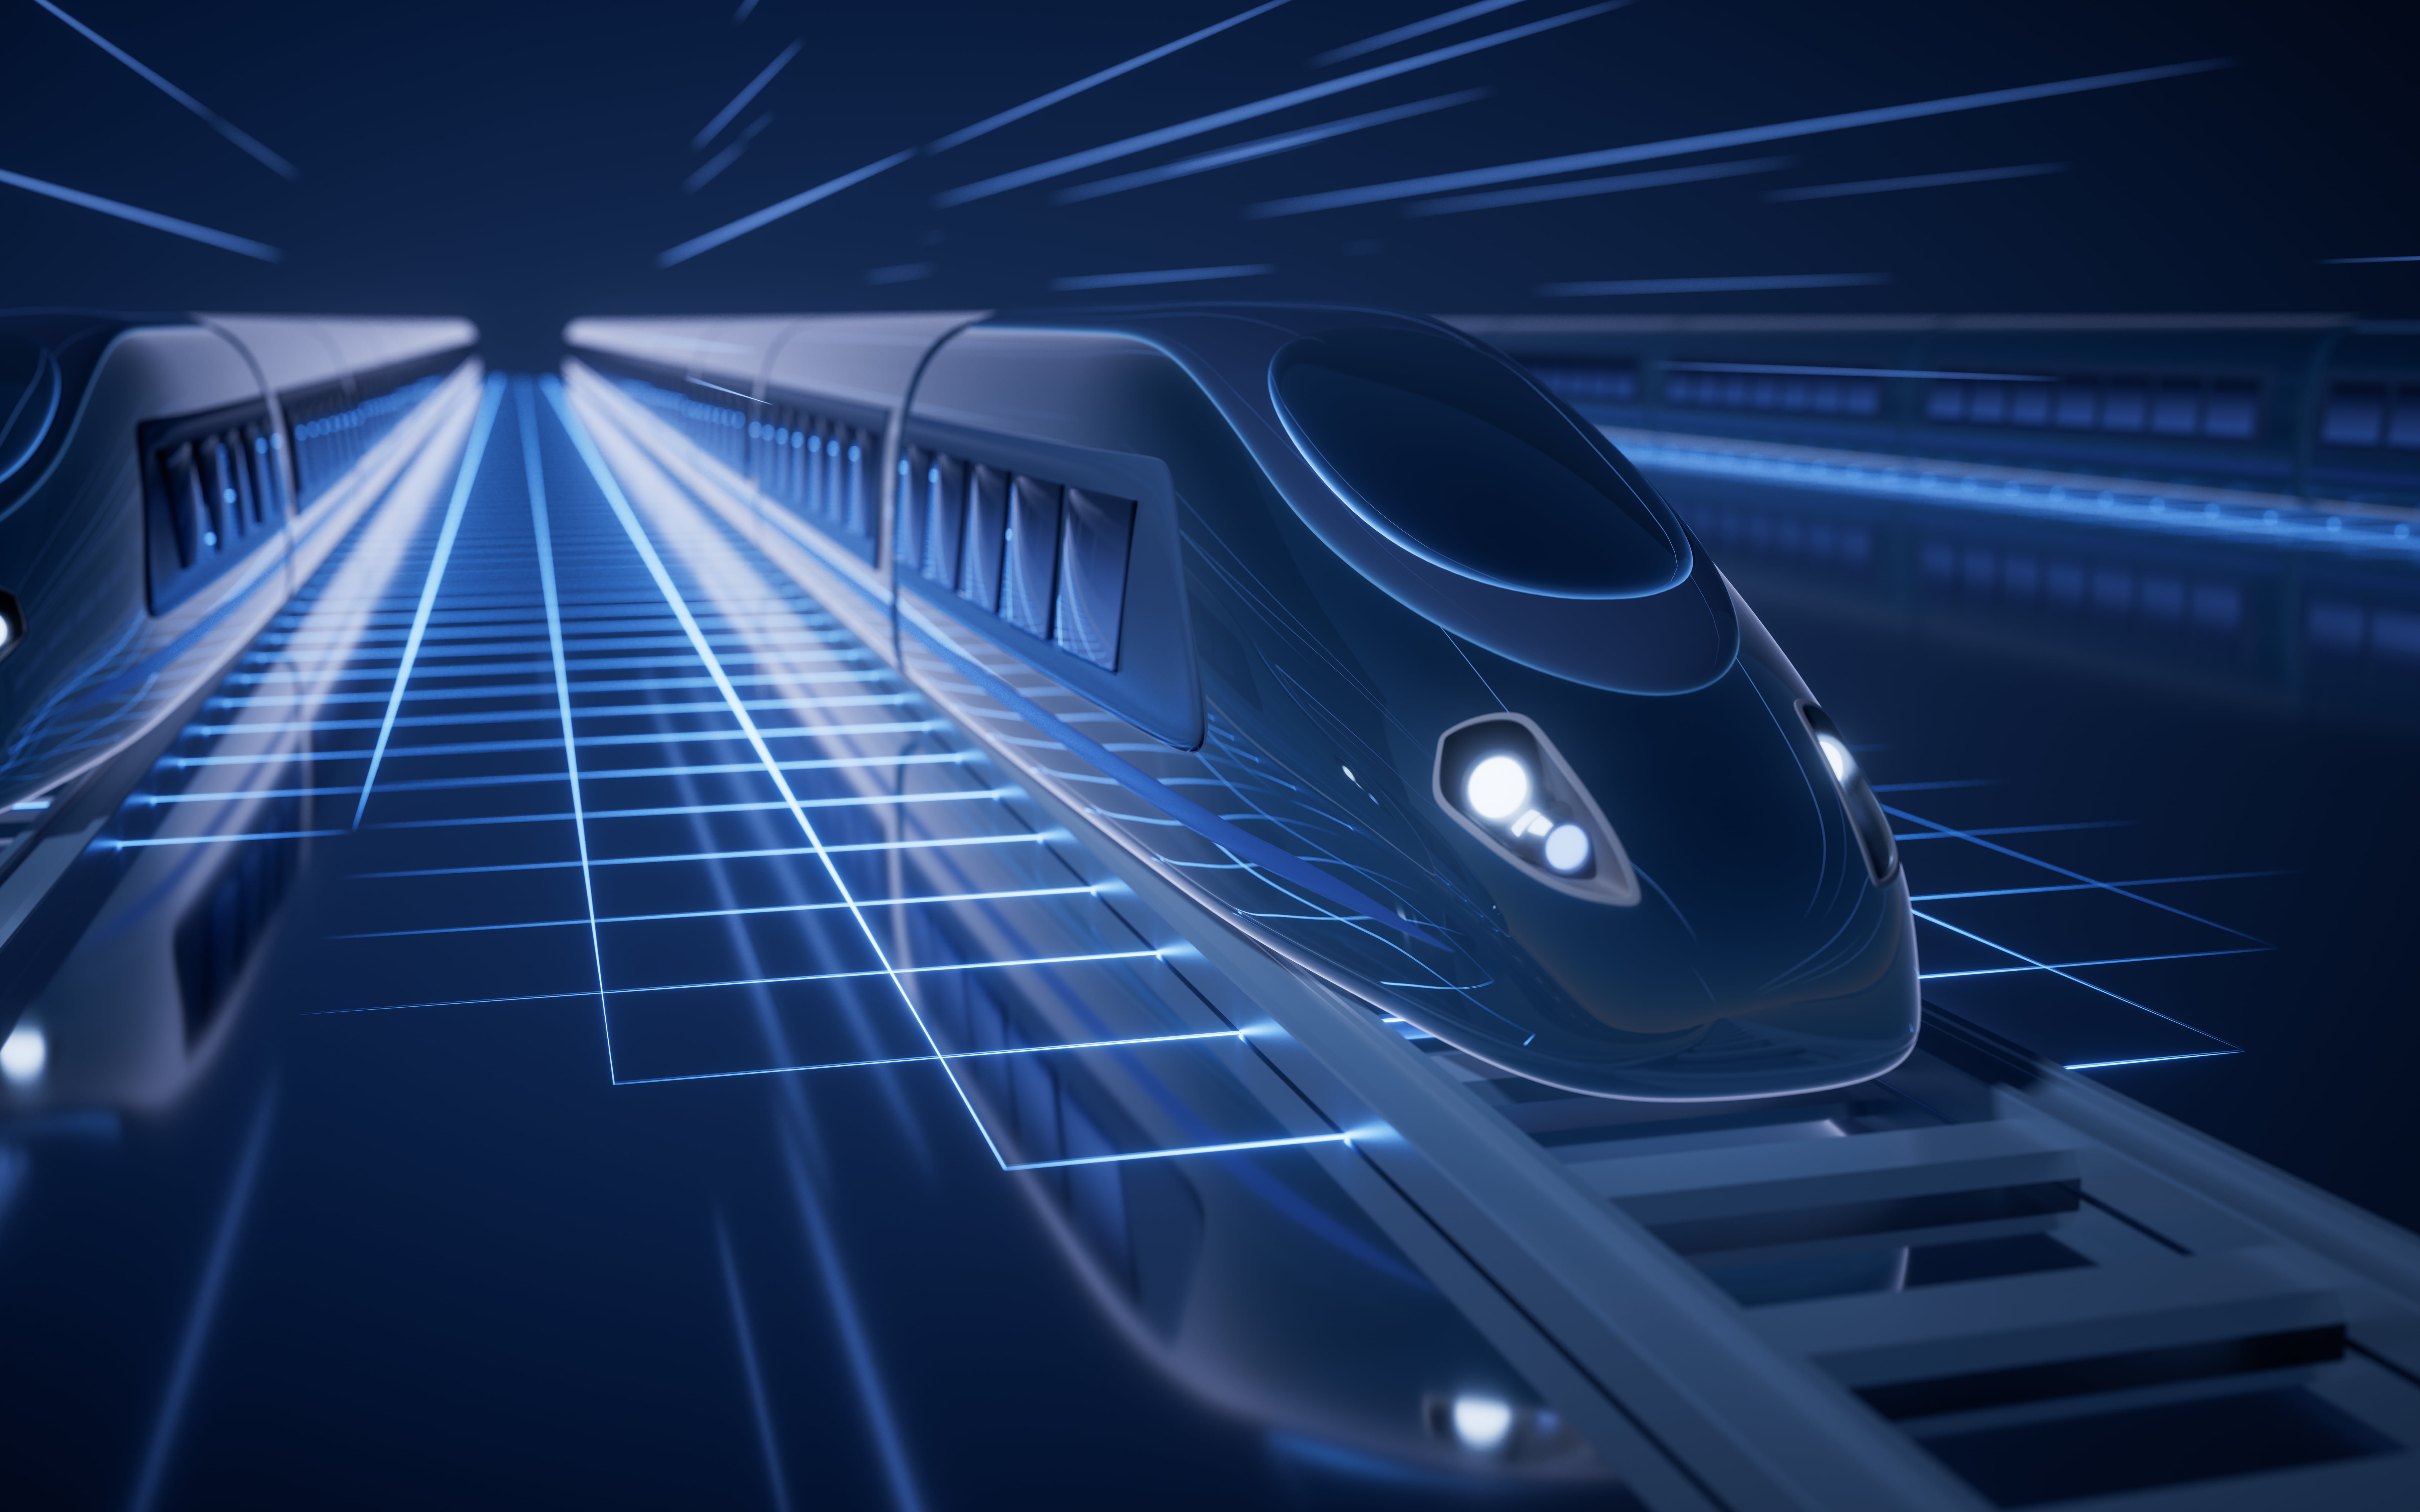 Digital high speed railway bullet train, 3d rendering.